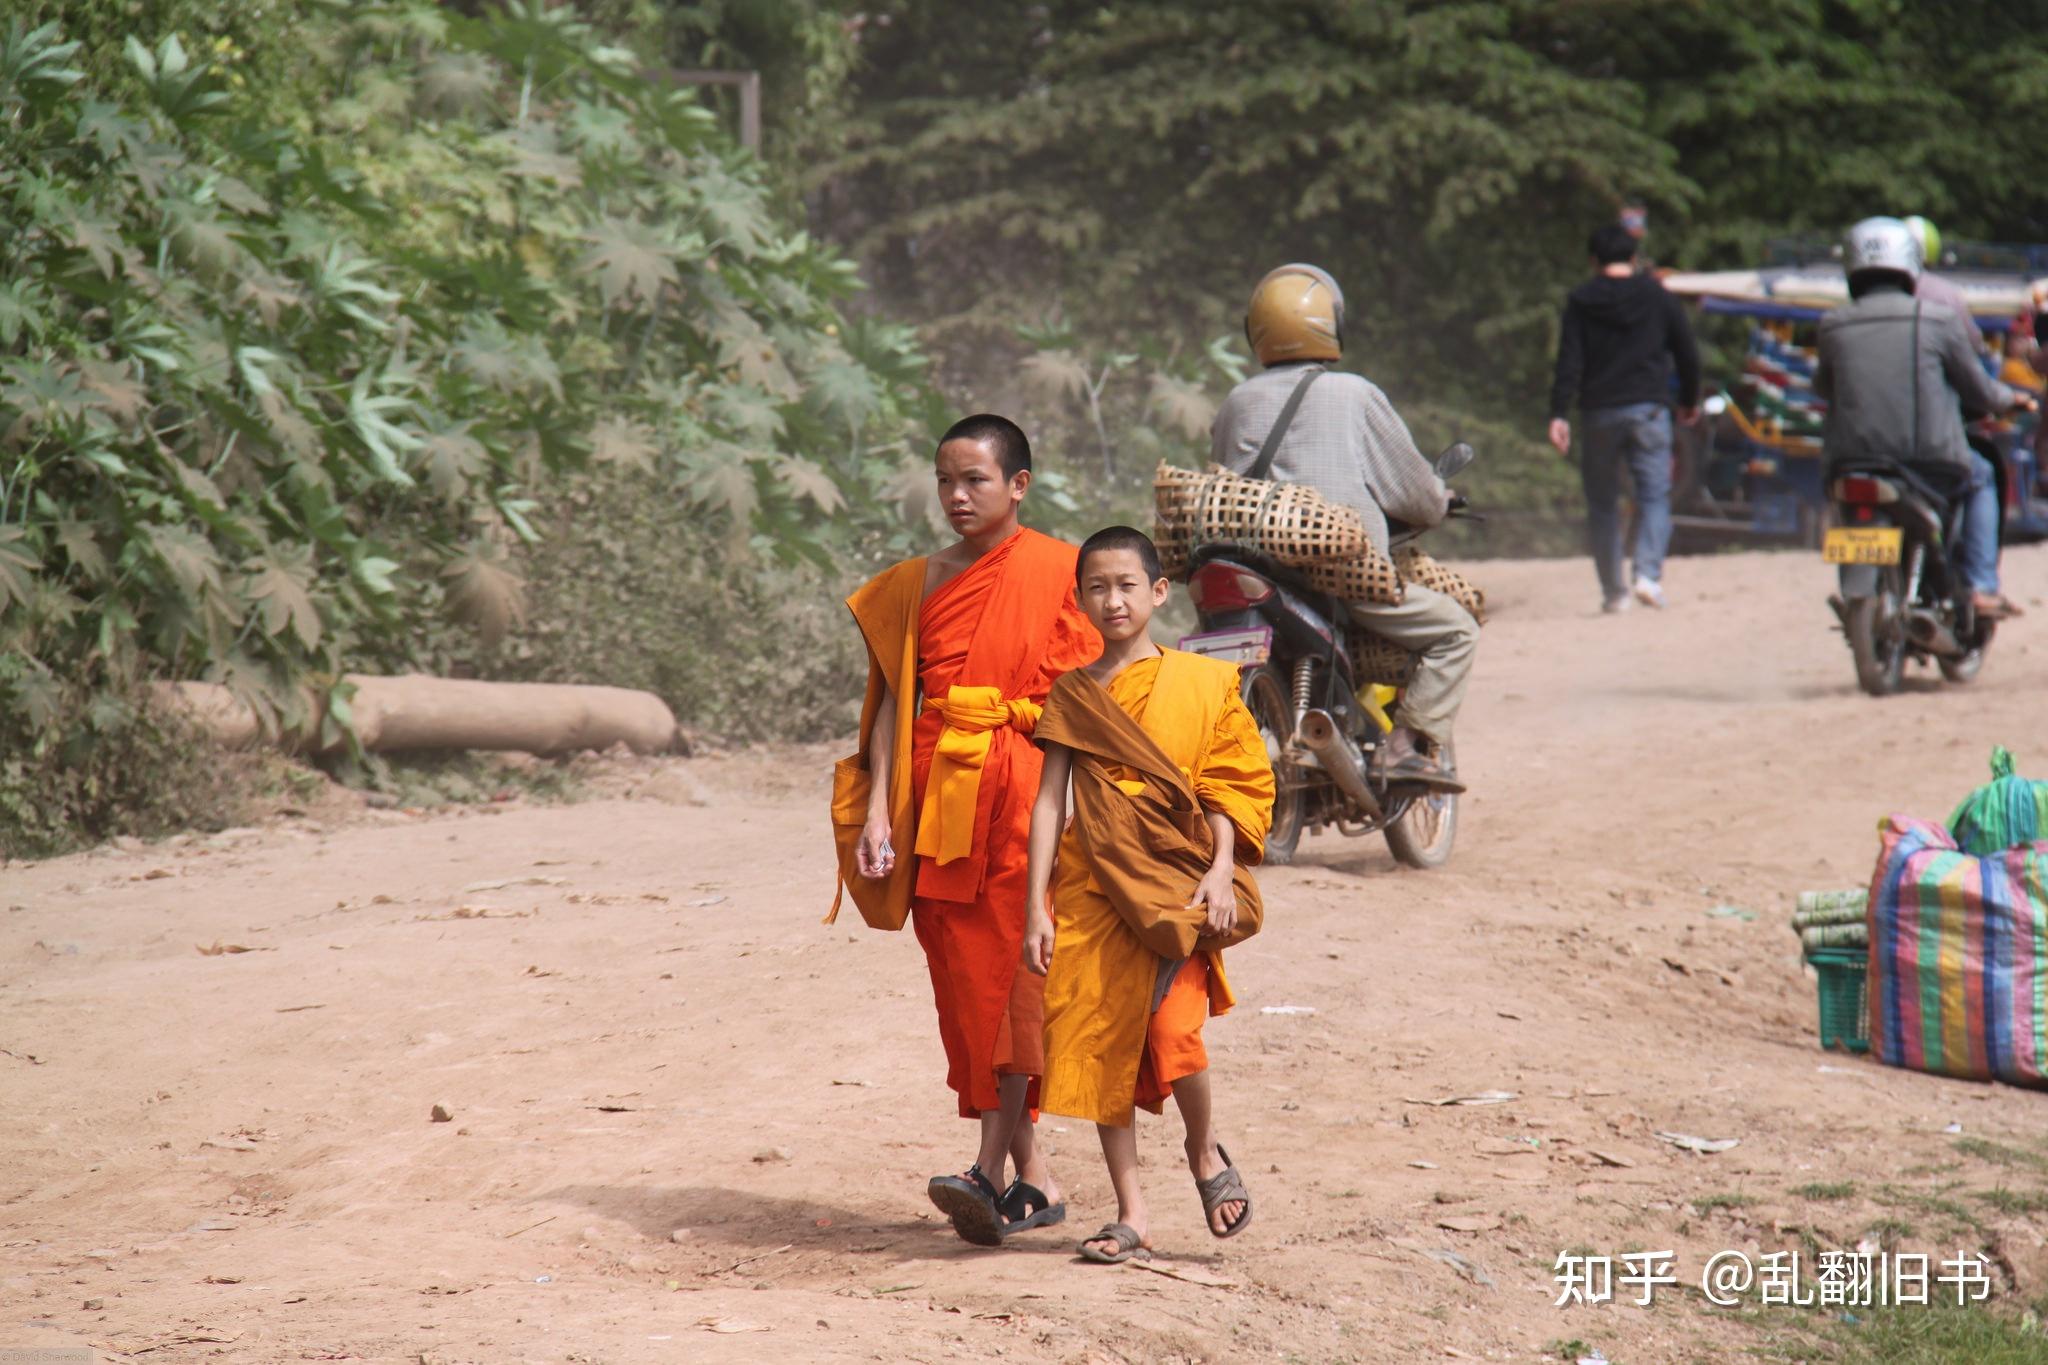 人文 | 探访老挝阿卡族